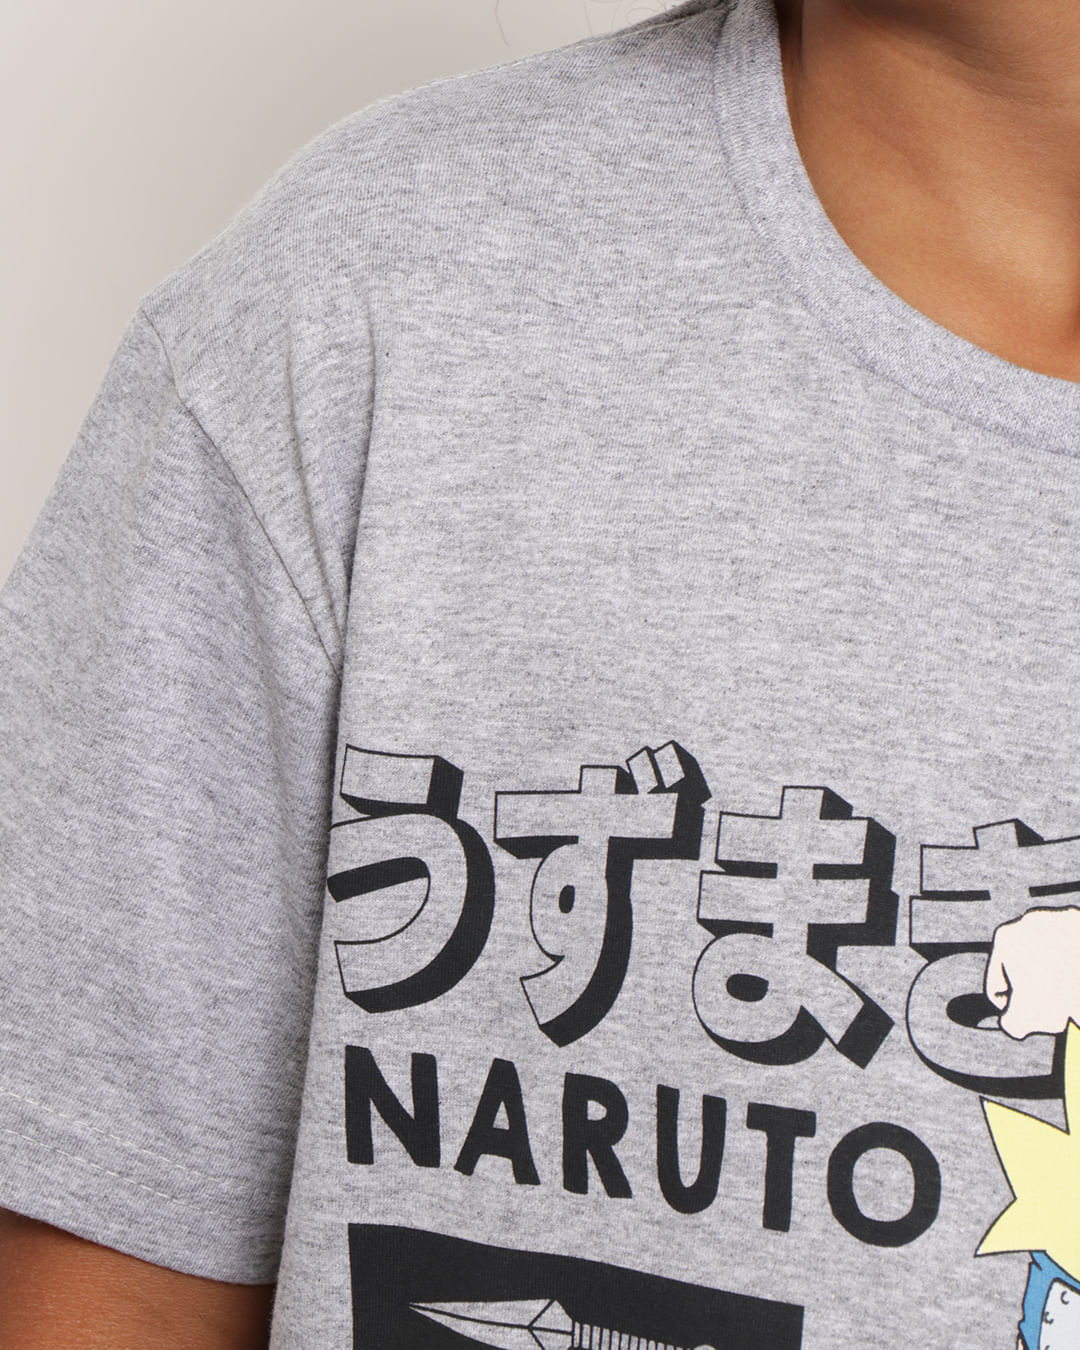 Camiseta-Ch34140-Mc-M-410-Naruto---Mescla-Medio